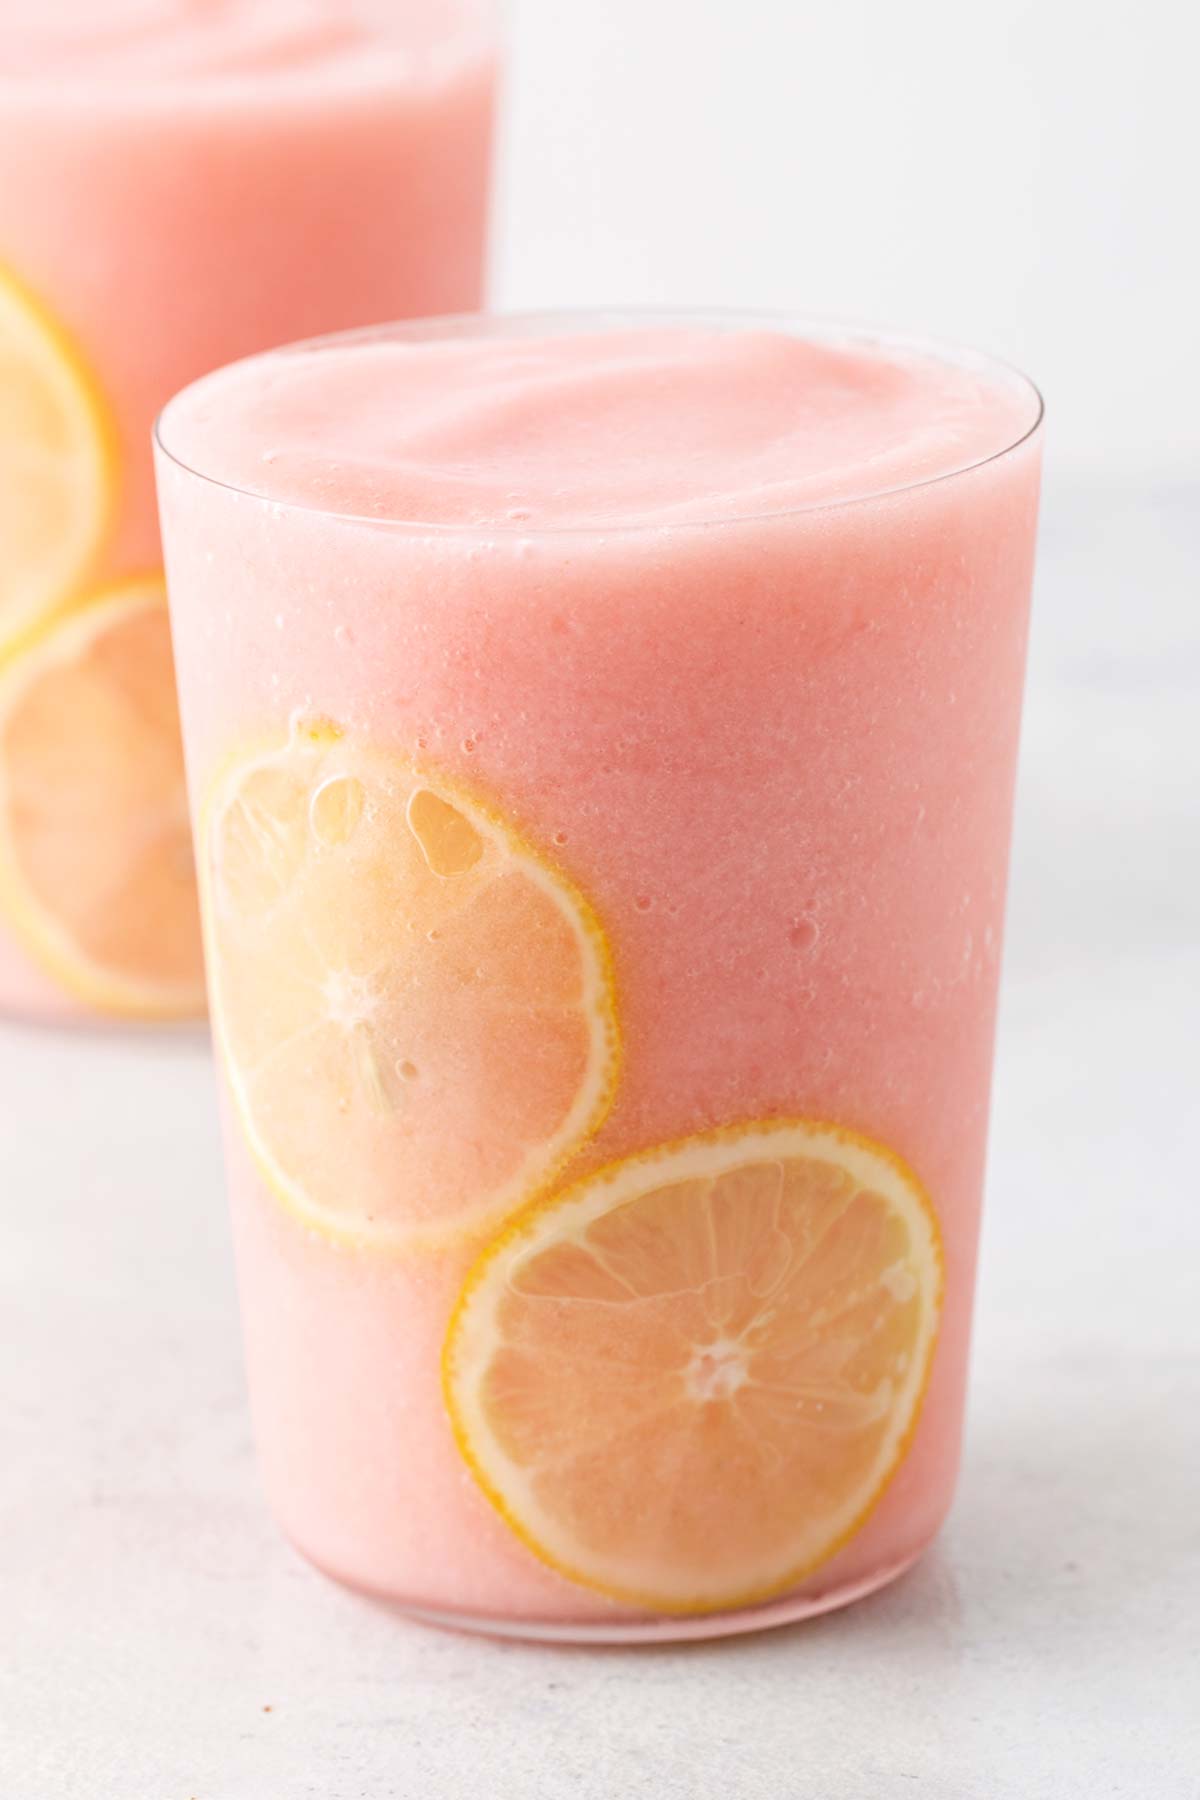 Frozen strawberry lemonade in a glass.